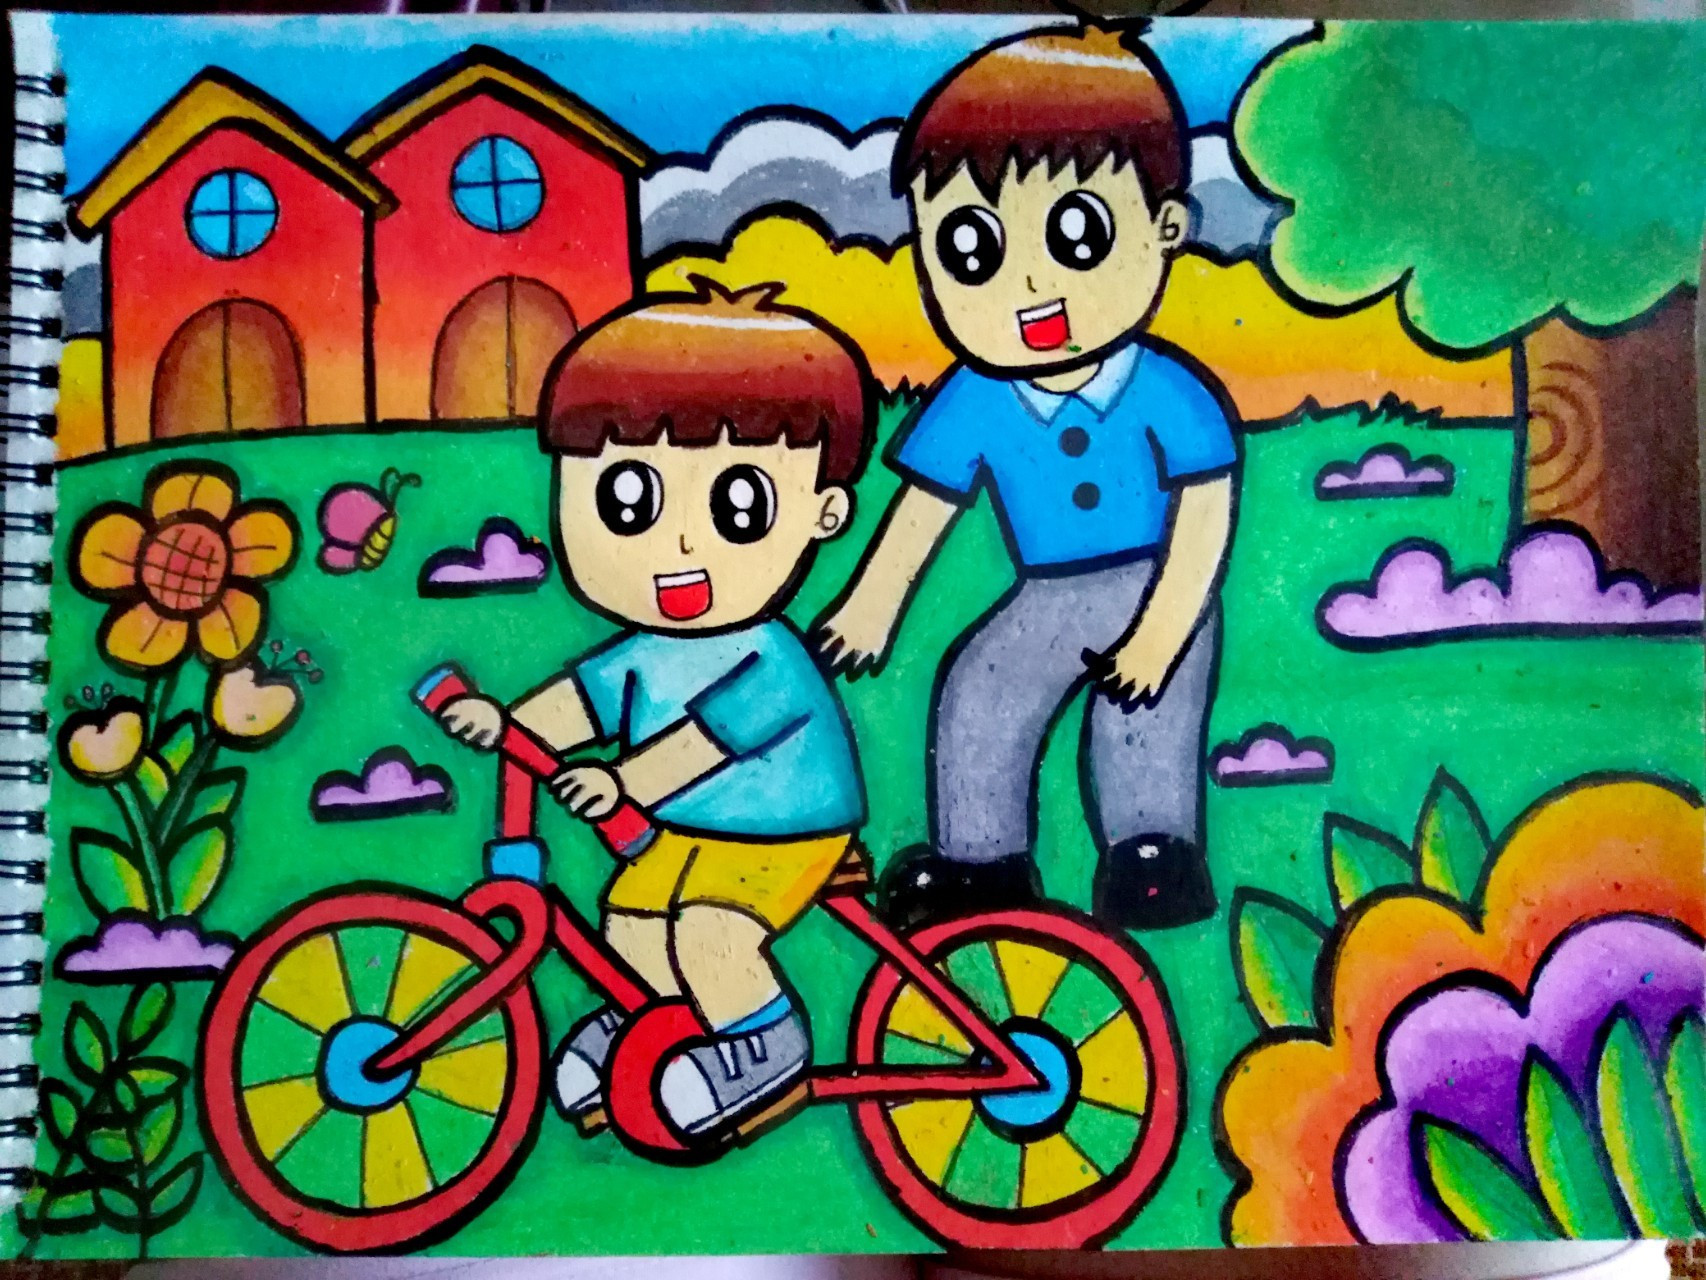 主题画 学骑自行车(原创) 主题画更新喽～ 这次的主题是学骑自行车